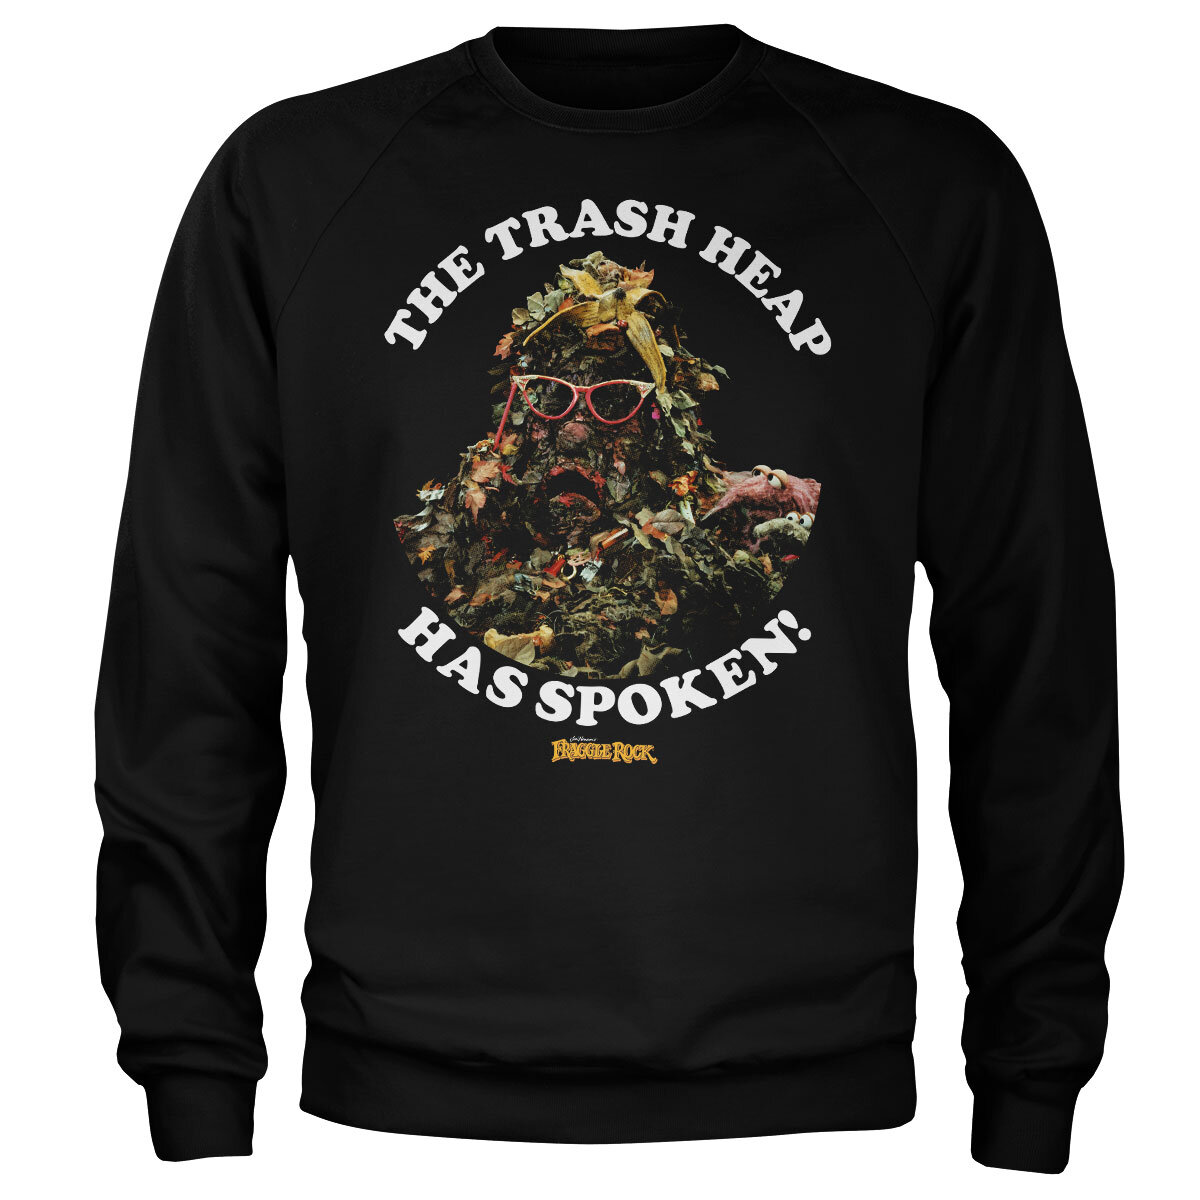 The Trash Heap Has Spoken Sweatshirt